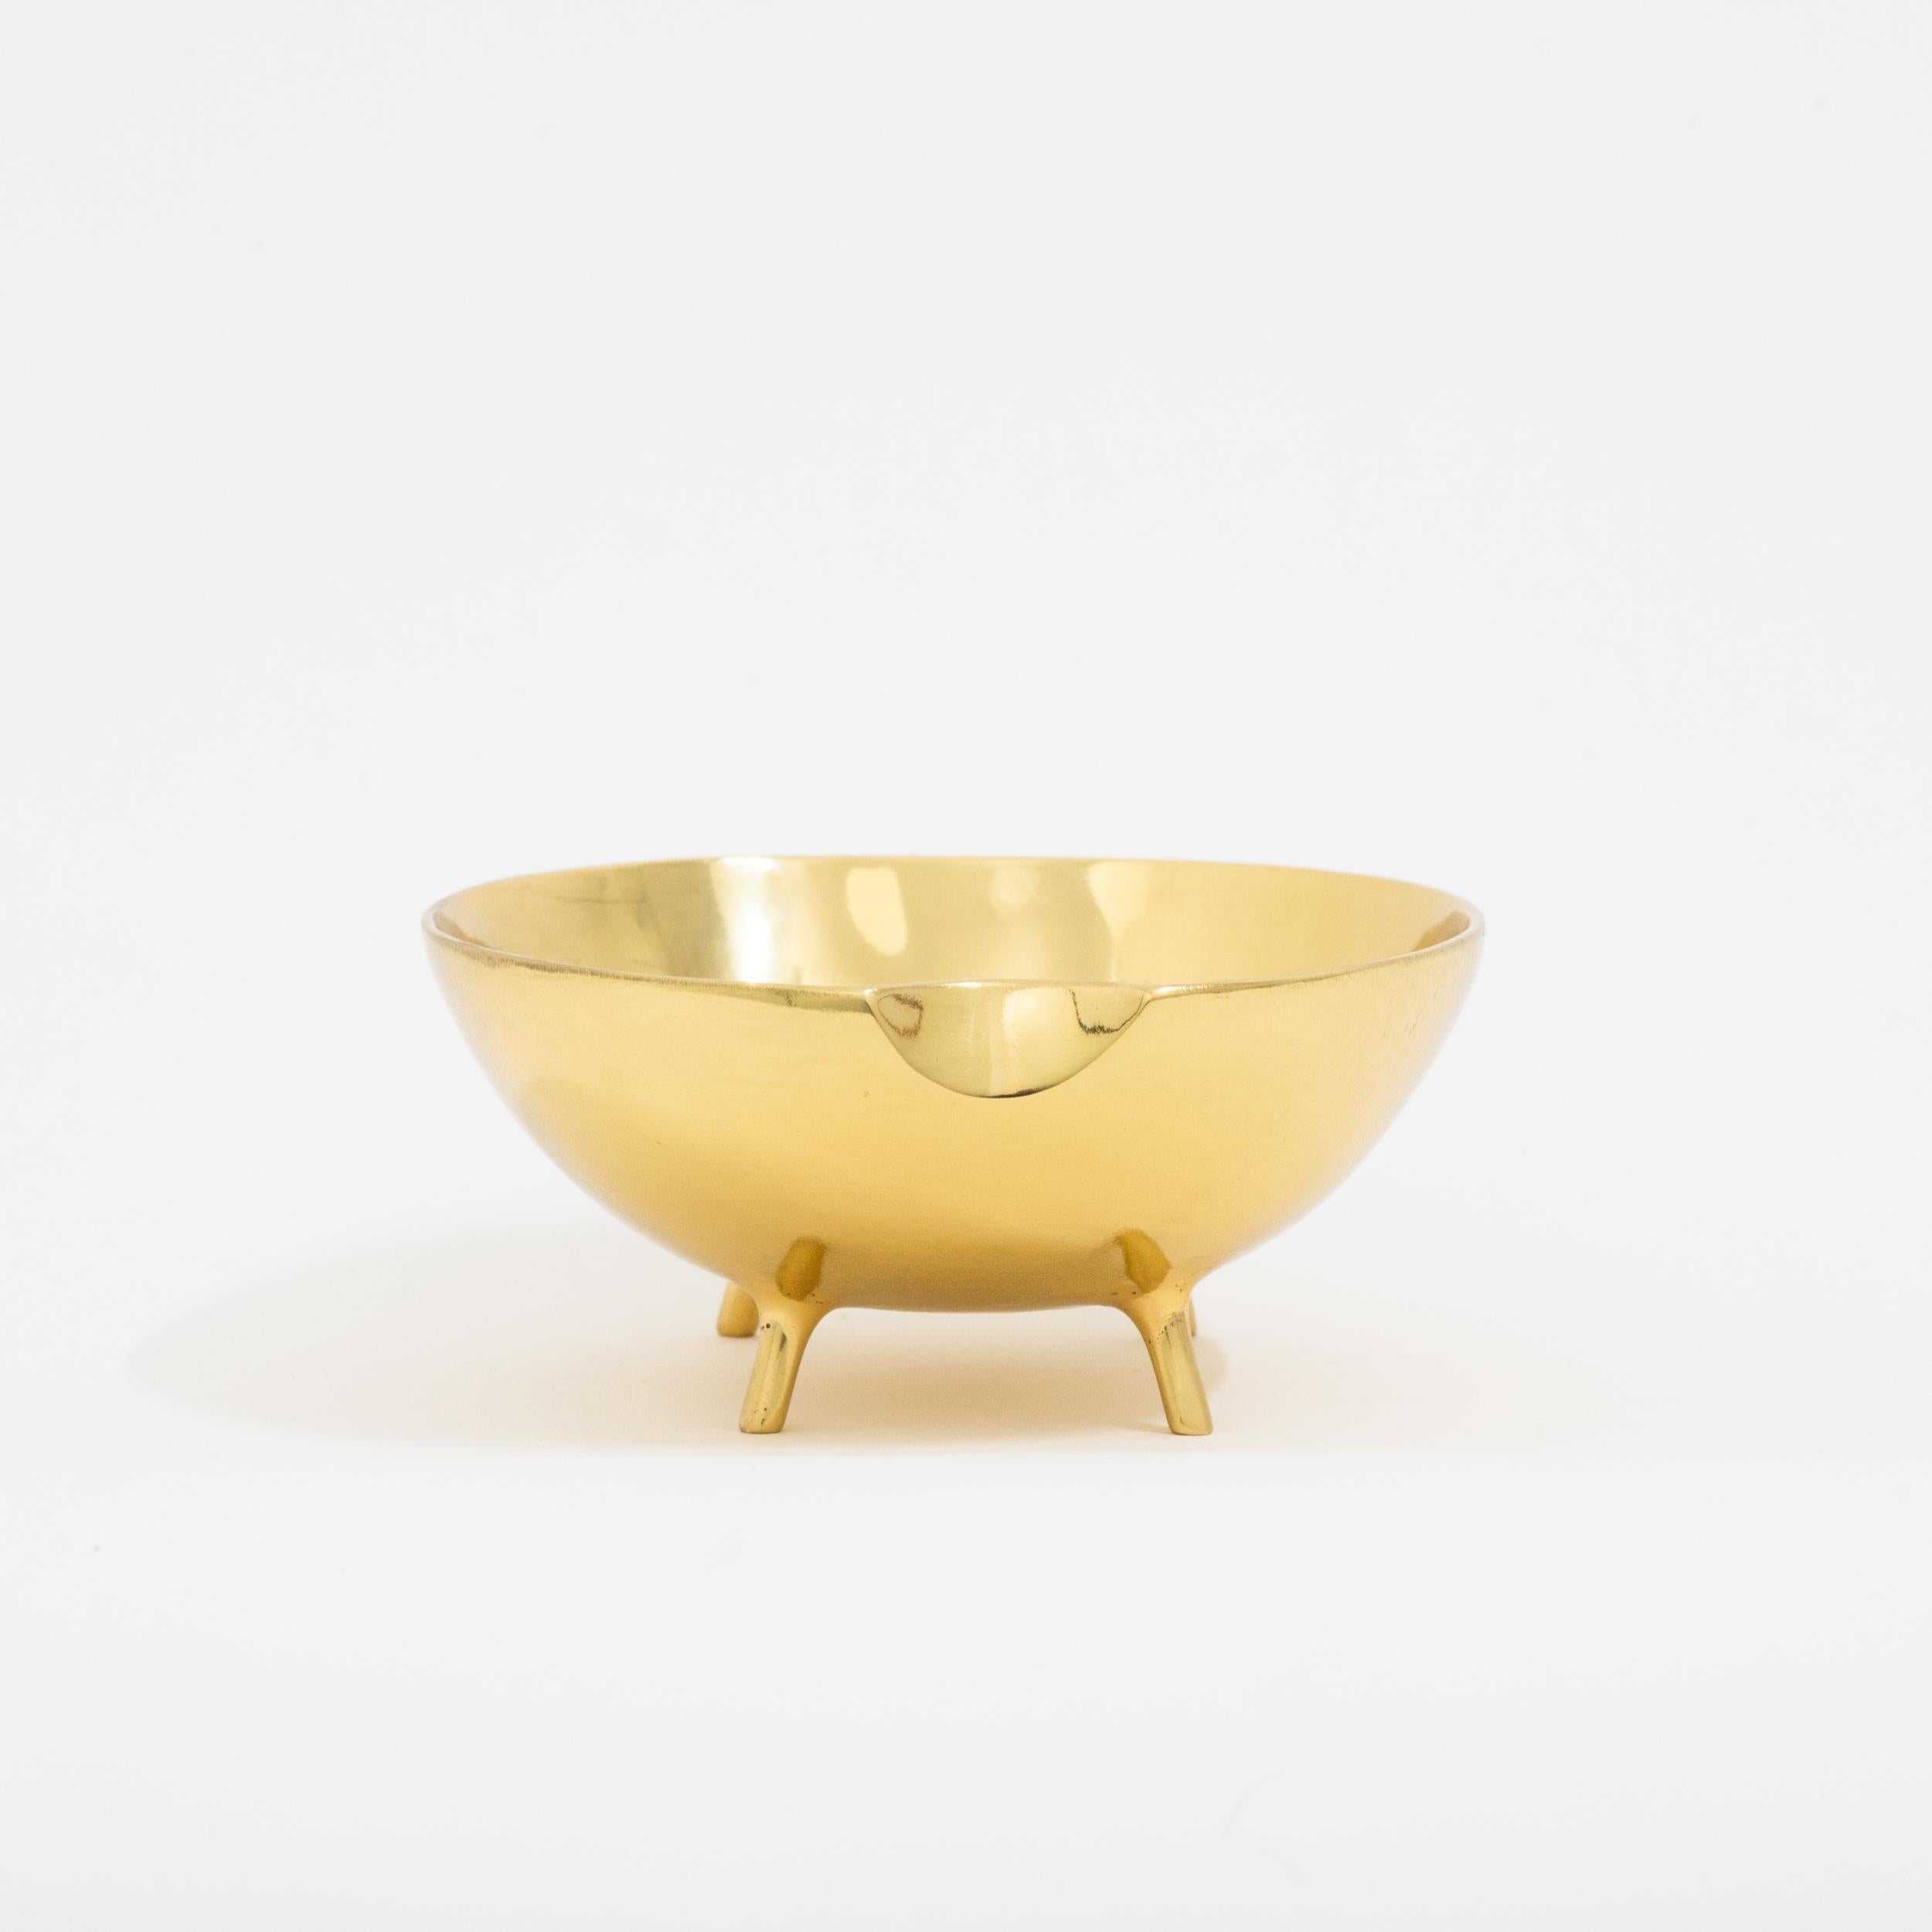 brass centerpiece bowl